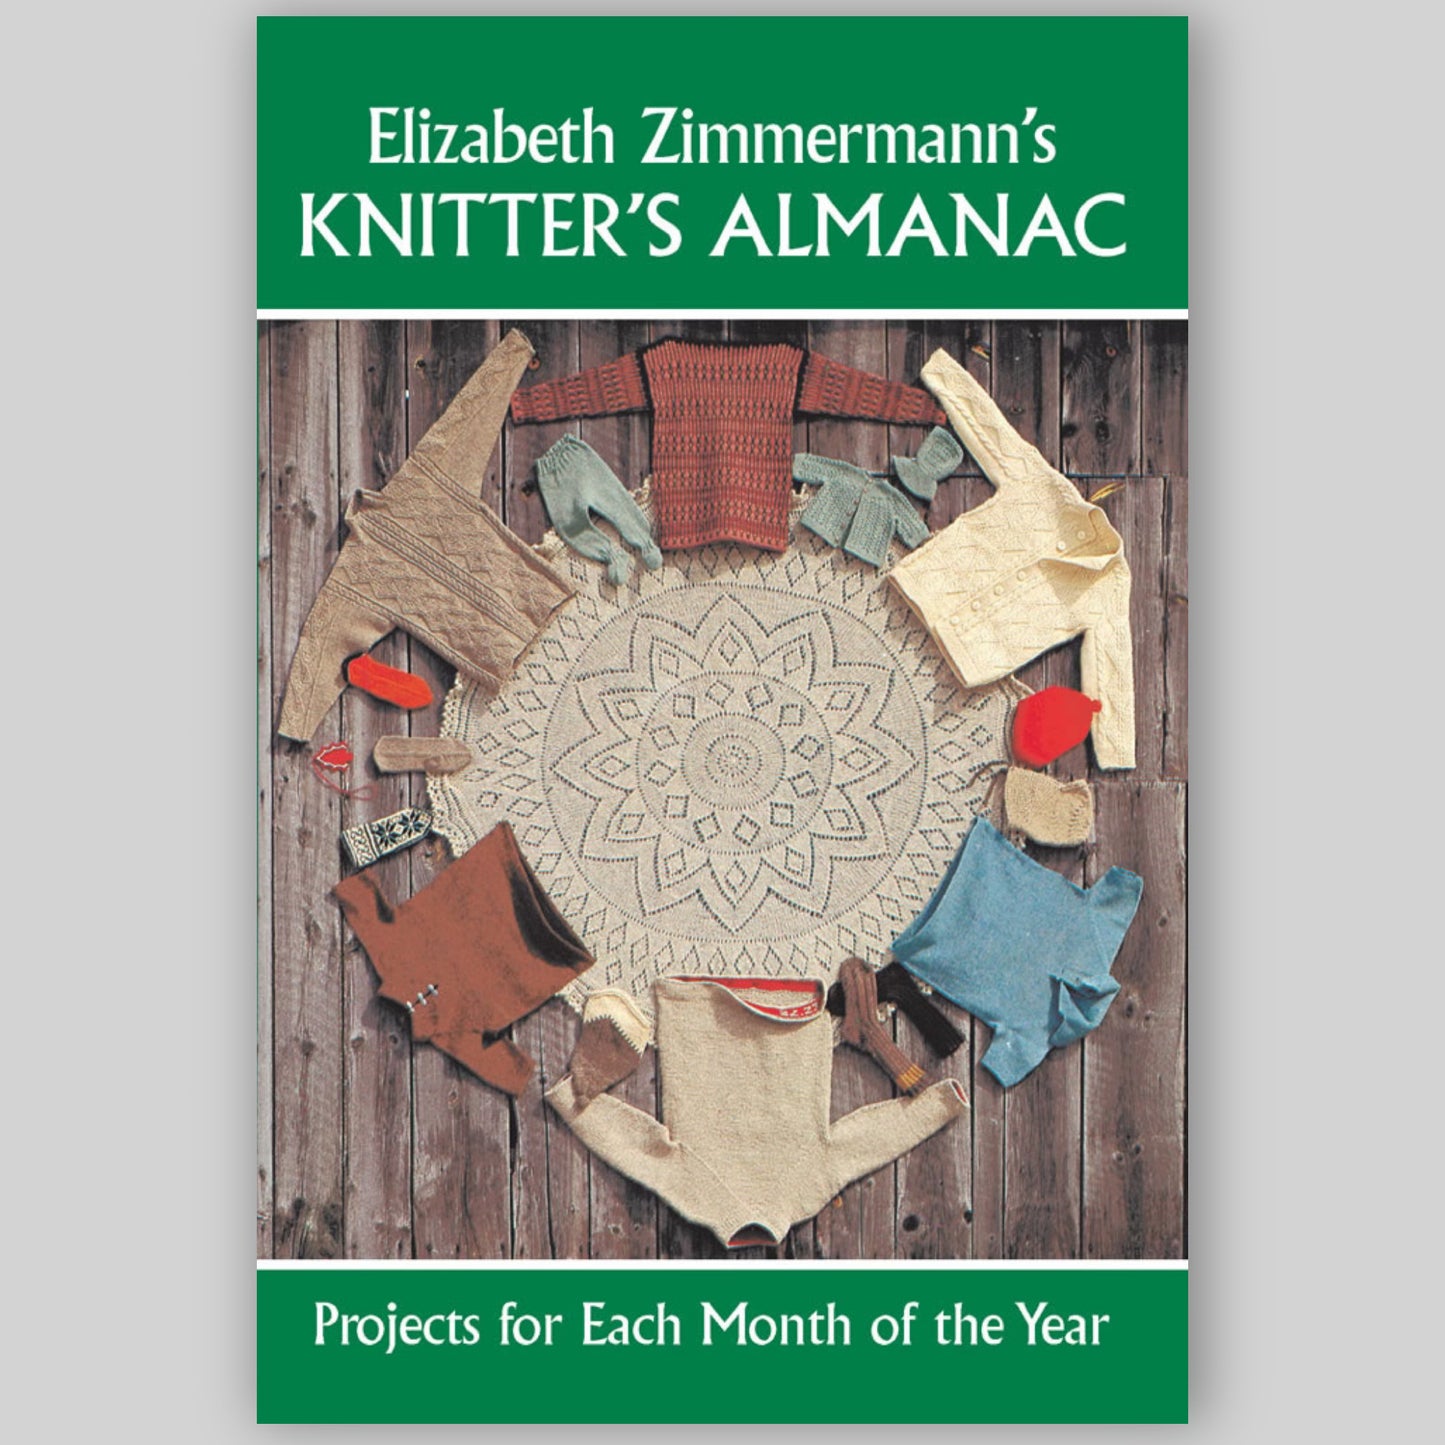 Knitter's Almanac